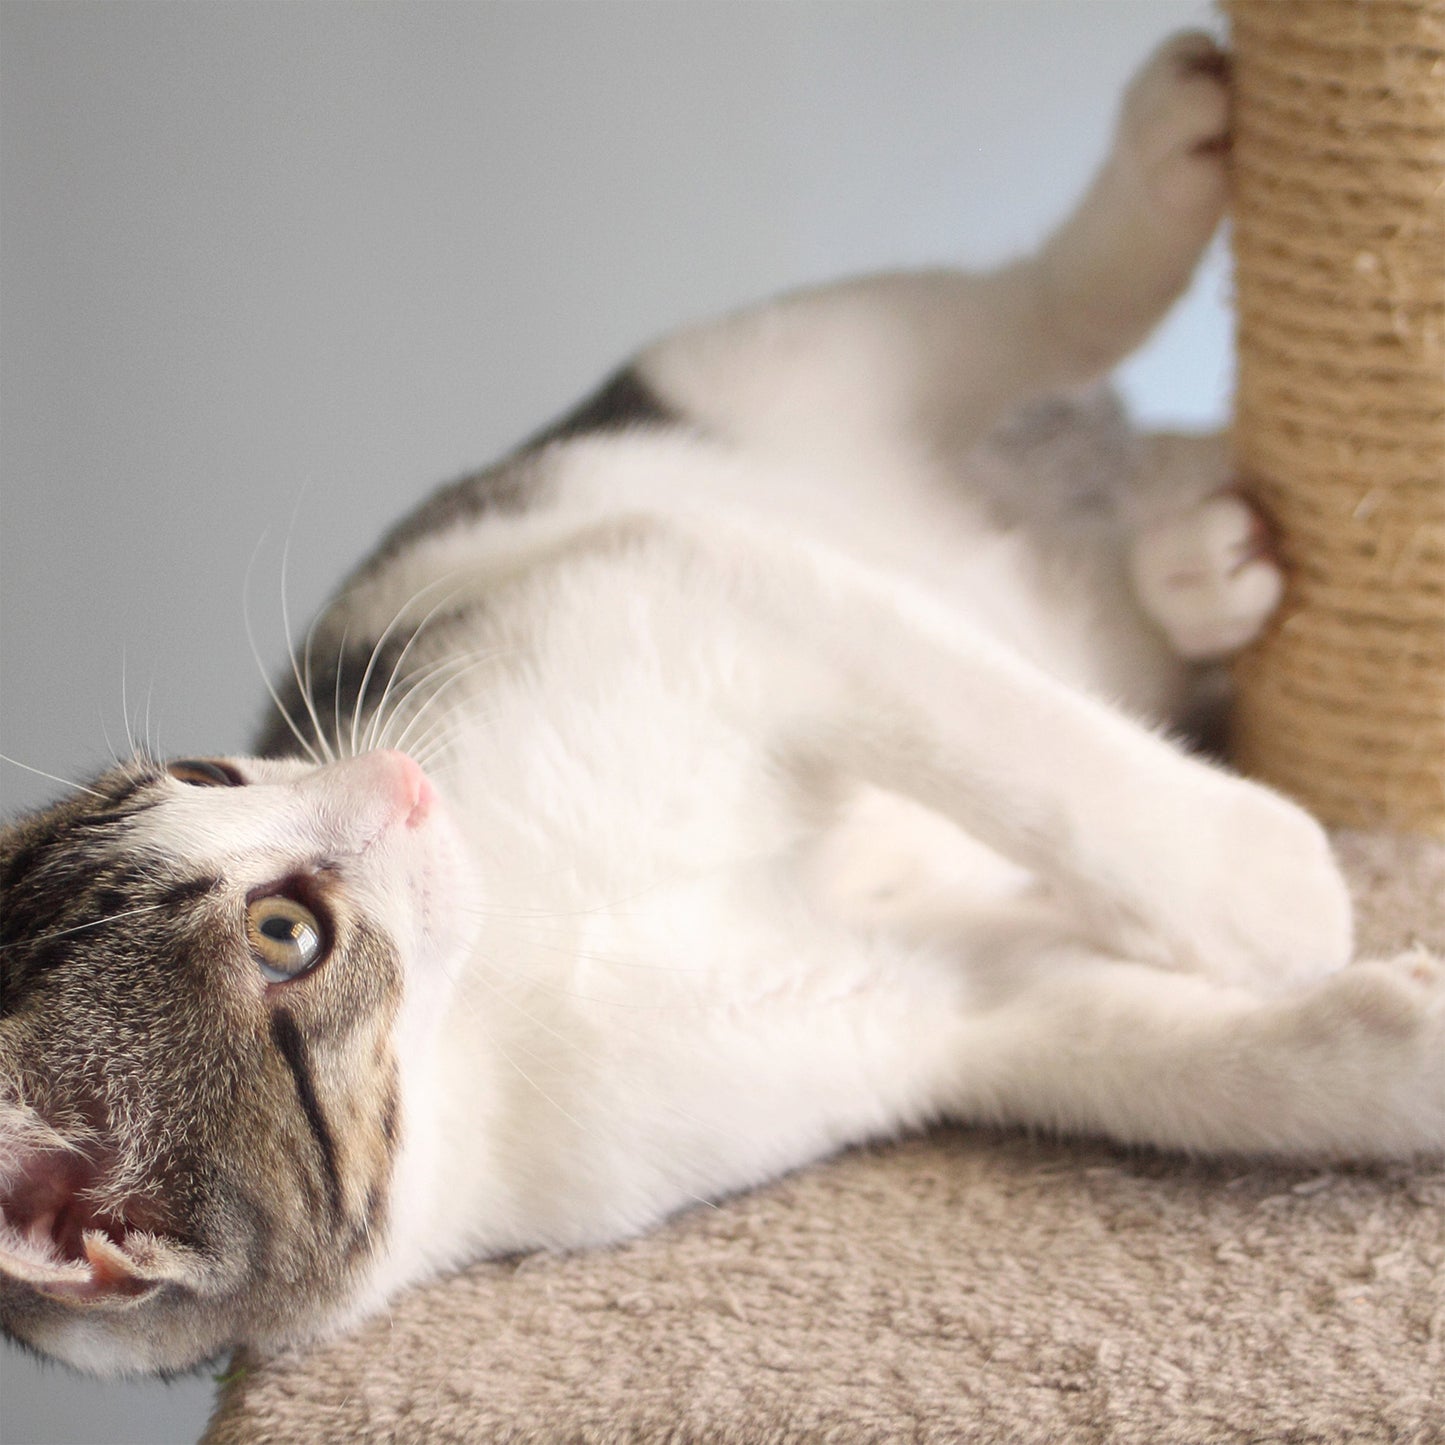 3-Tier Indoor Cat Scratching Post